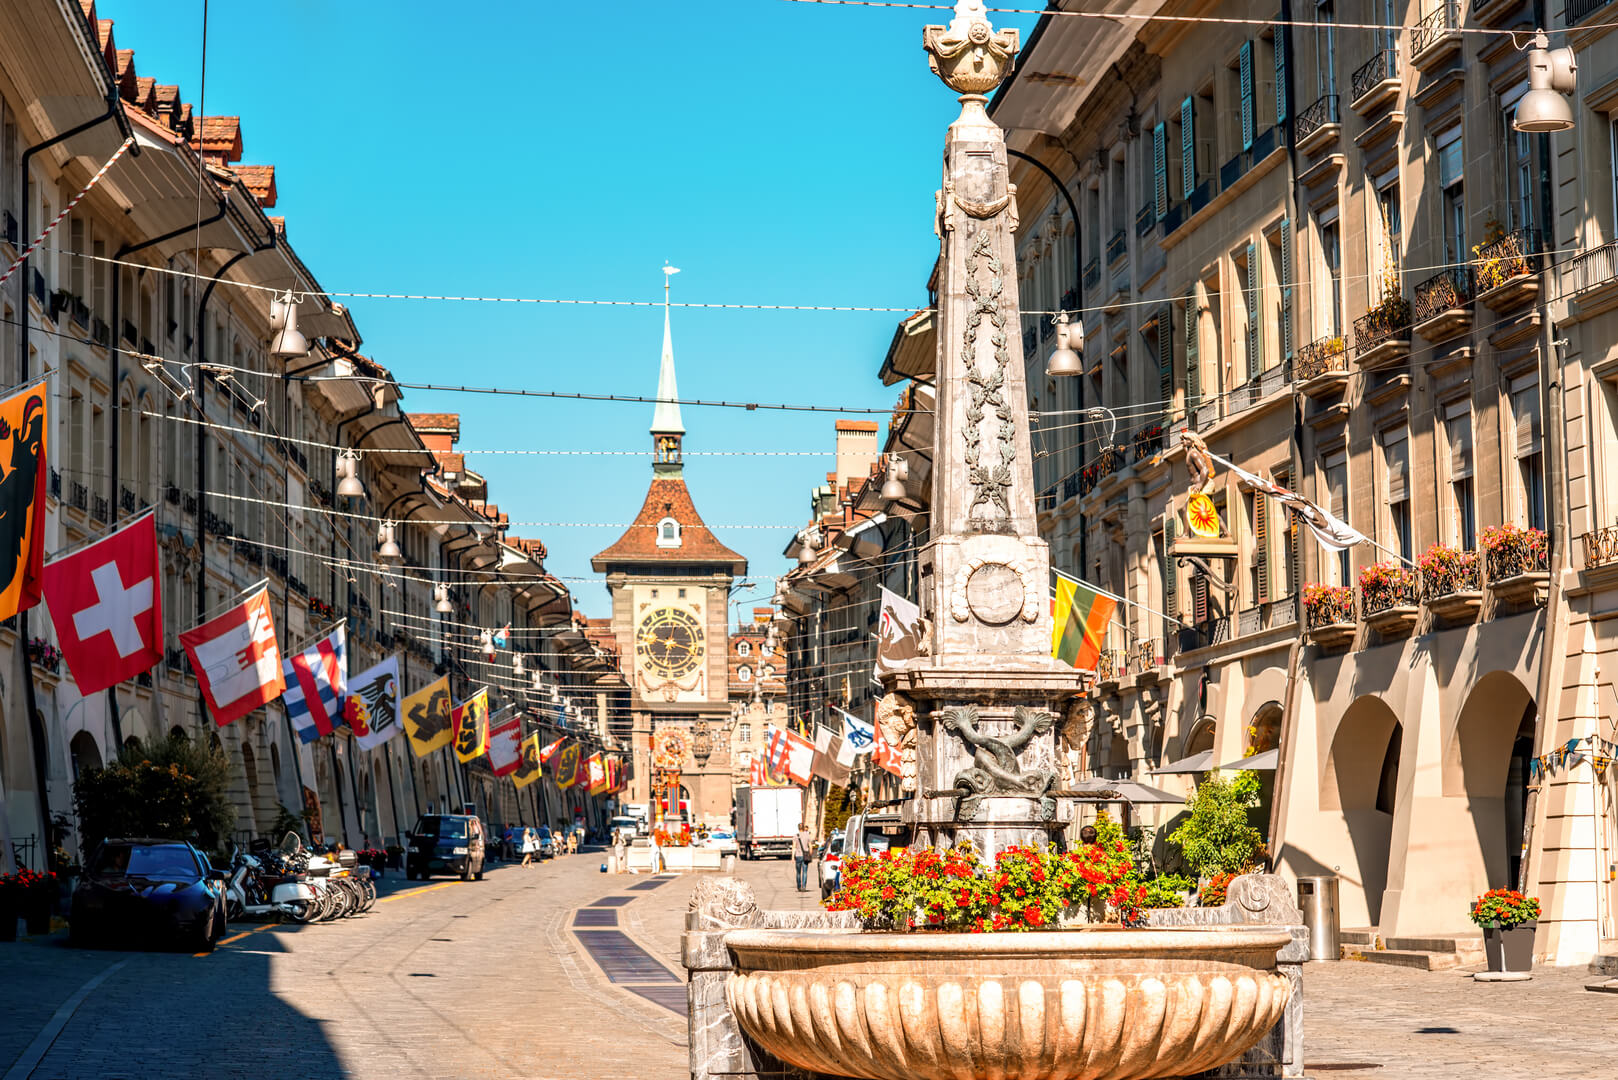 Вид на улицу Крамгассе с фонтаном и часовой башней в старом городе Берна. Это популярная торговая улица и средневековый центр города Берн, Швейцария